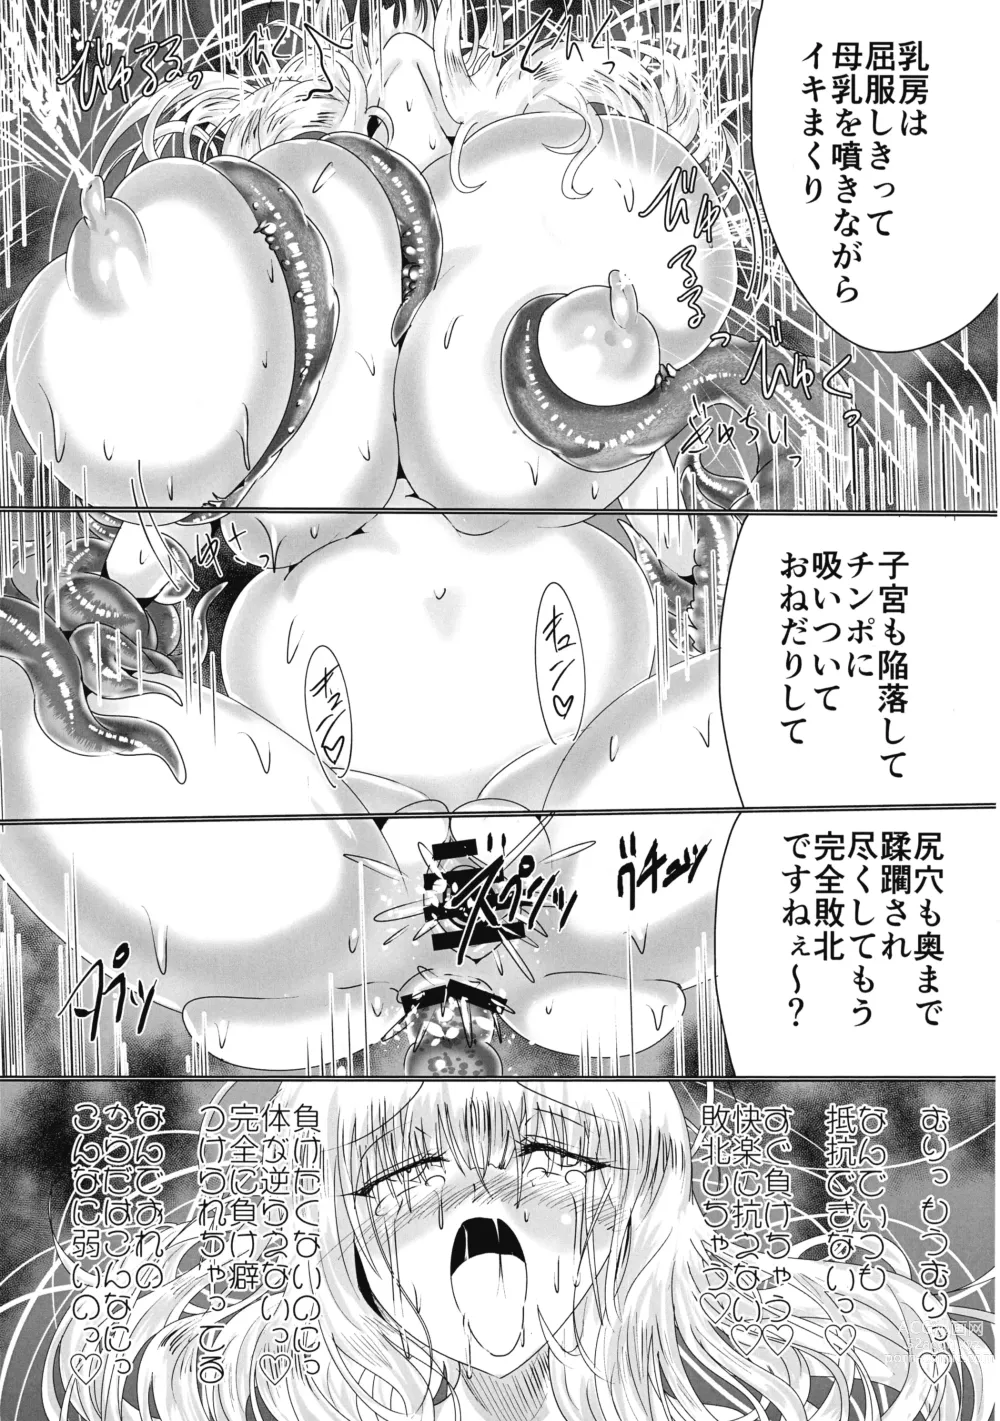 Page 74 of doujinshi Hako Tenjin